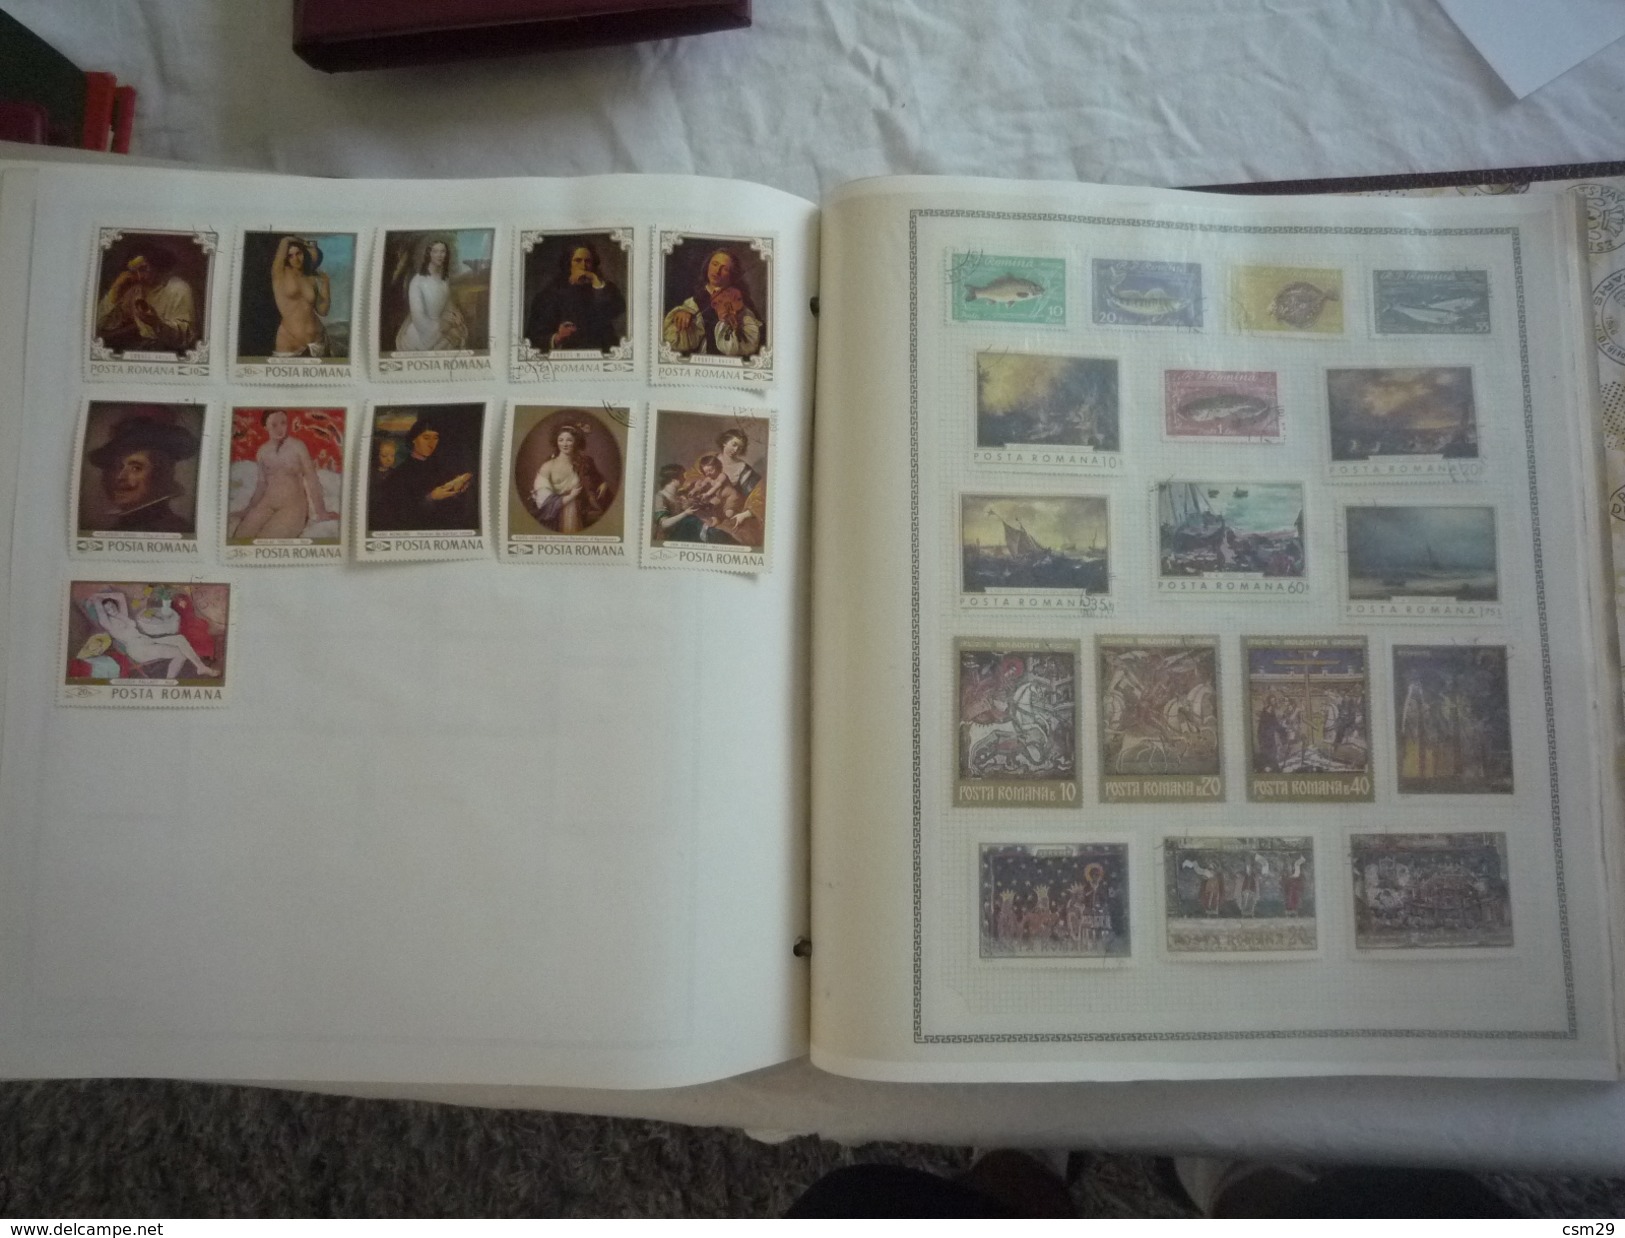 Dans un carton, Classeurs Timbres Monde, France, Colonies Françaises des milliers - Lettres - A voir - 99 scans